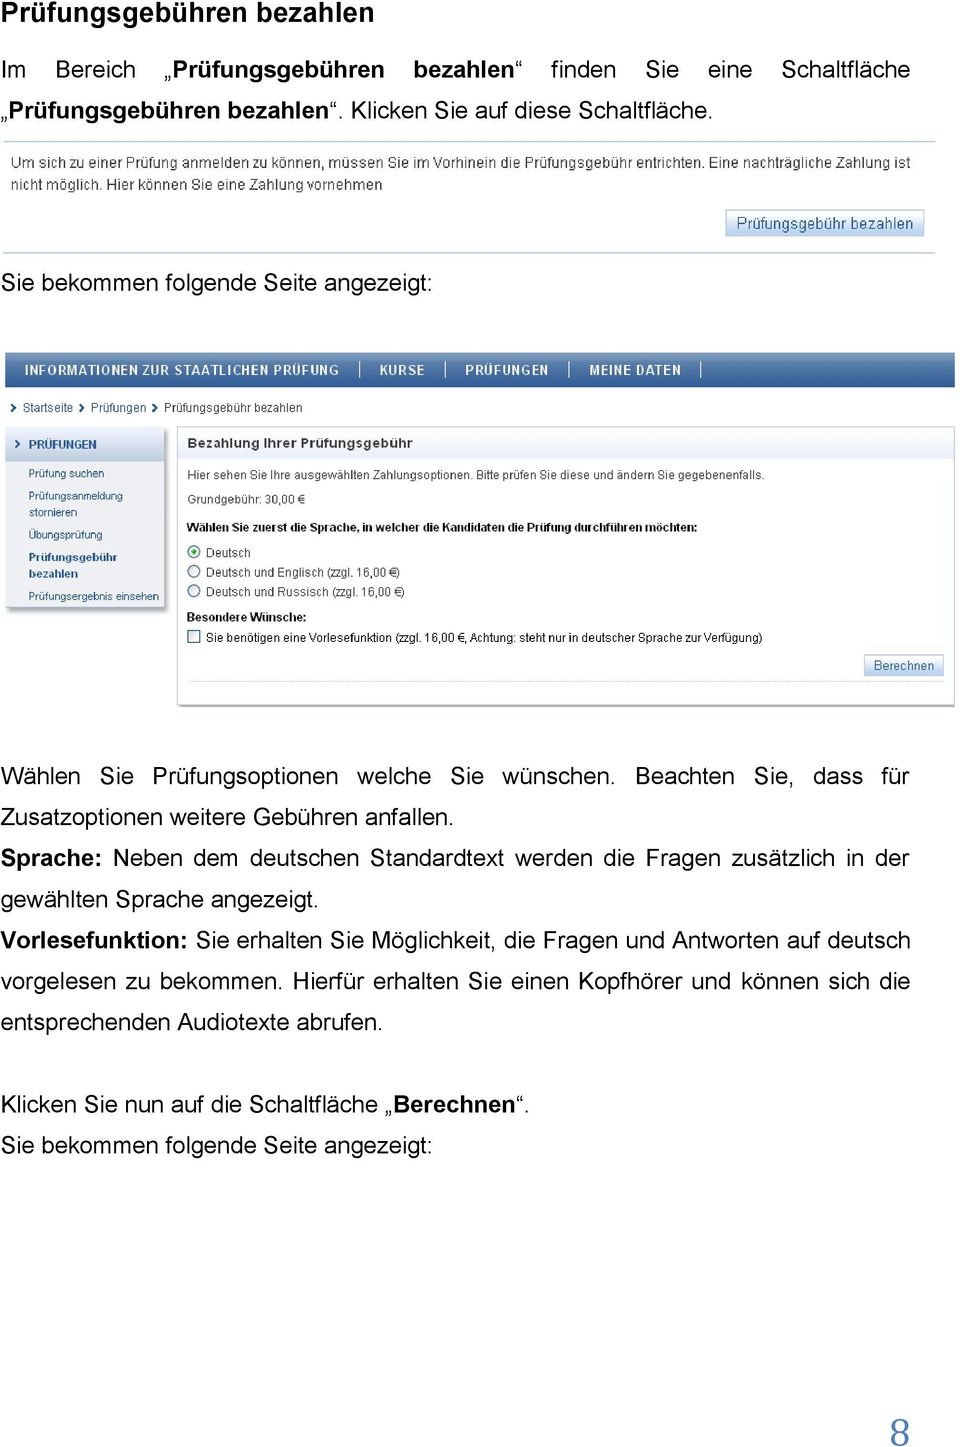 Sprache: Neben dem deutschen Standardtext werden die Fragen zusätzlich in der gewählten Sprache angezeigt.